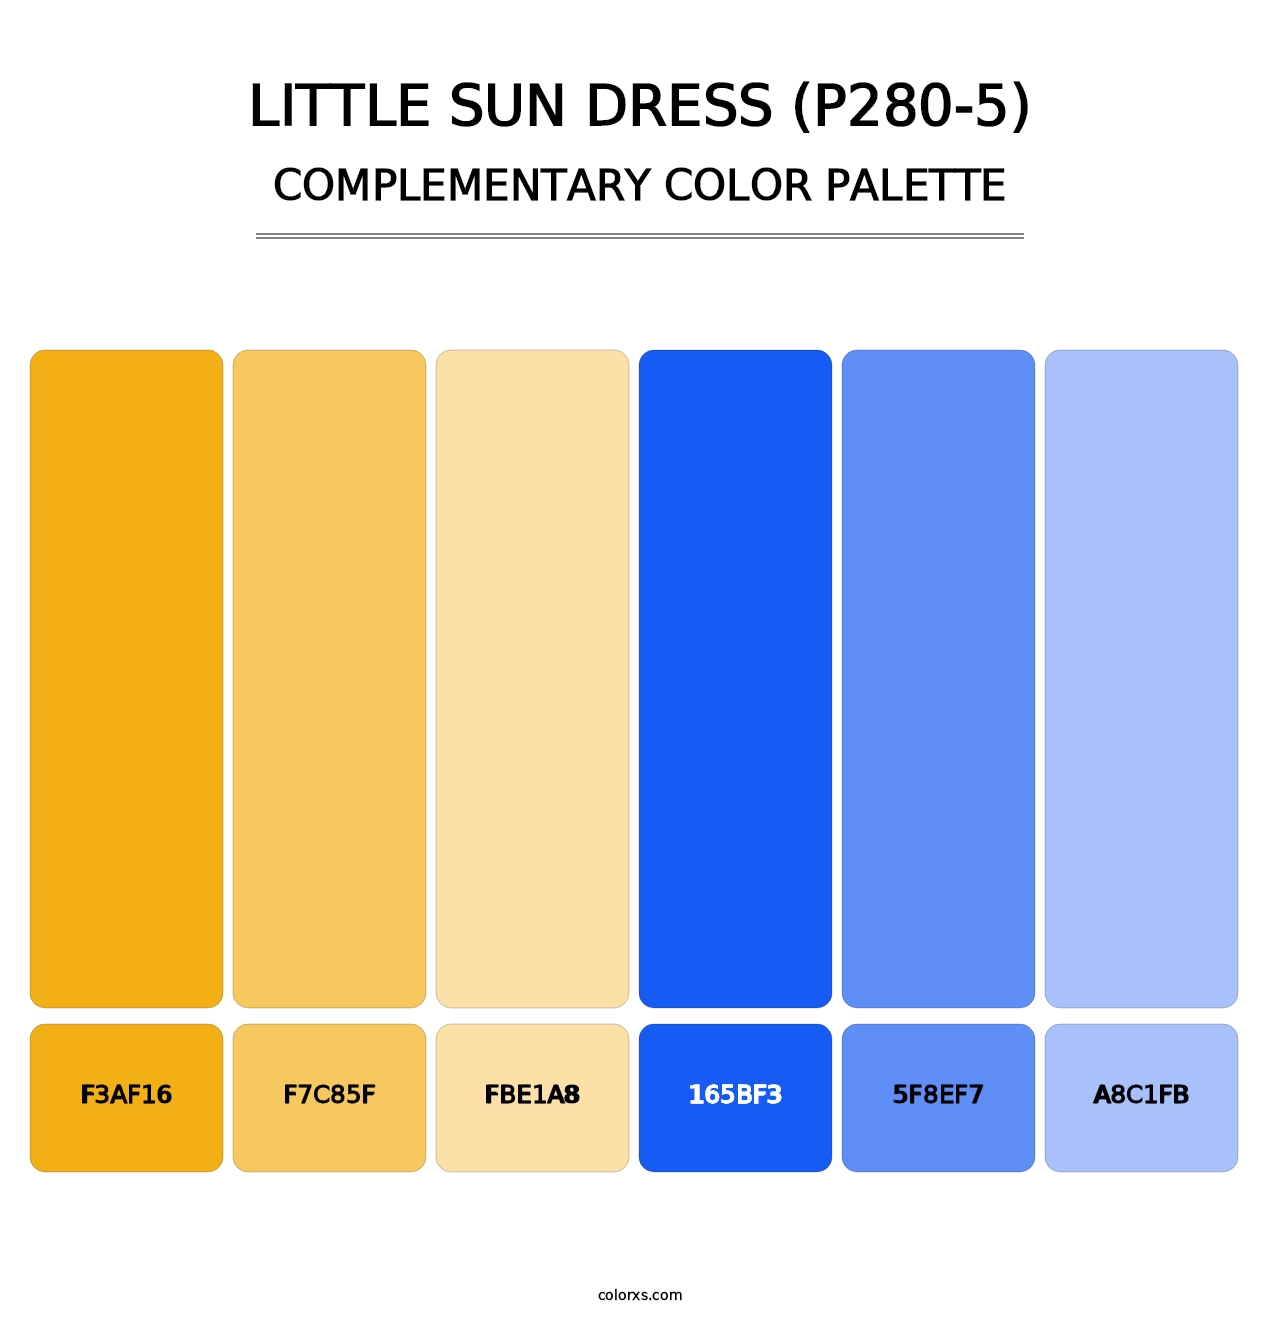 Little Sun Dress (P280-5) - Complementary Color Palette